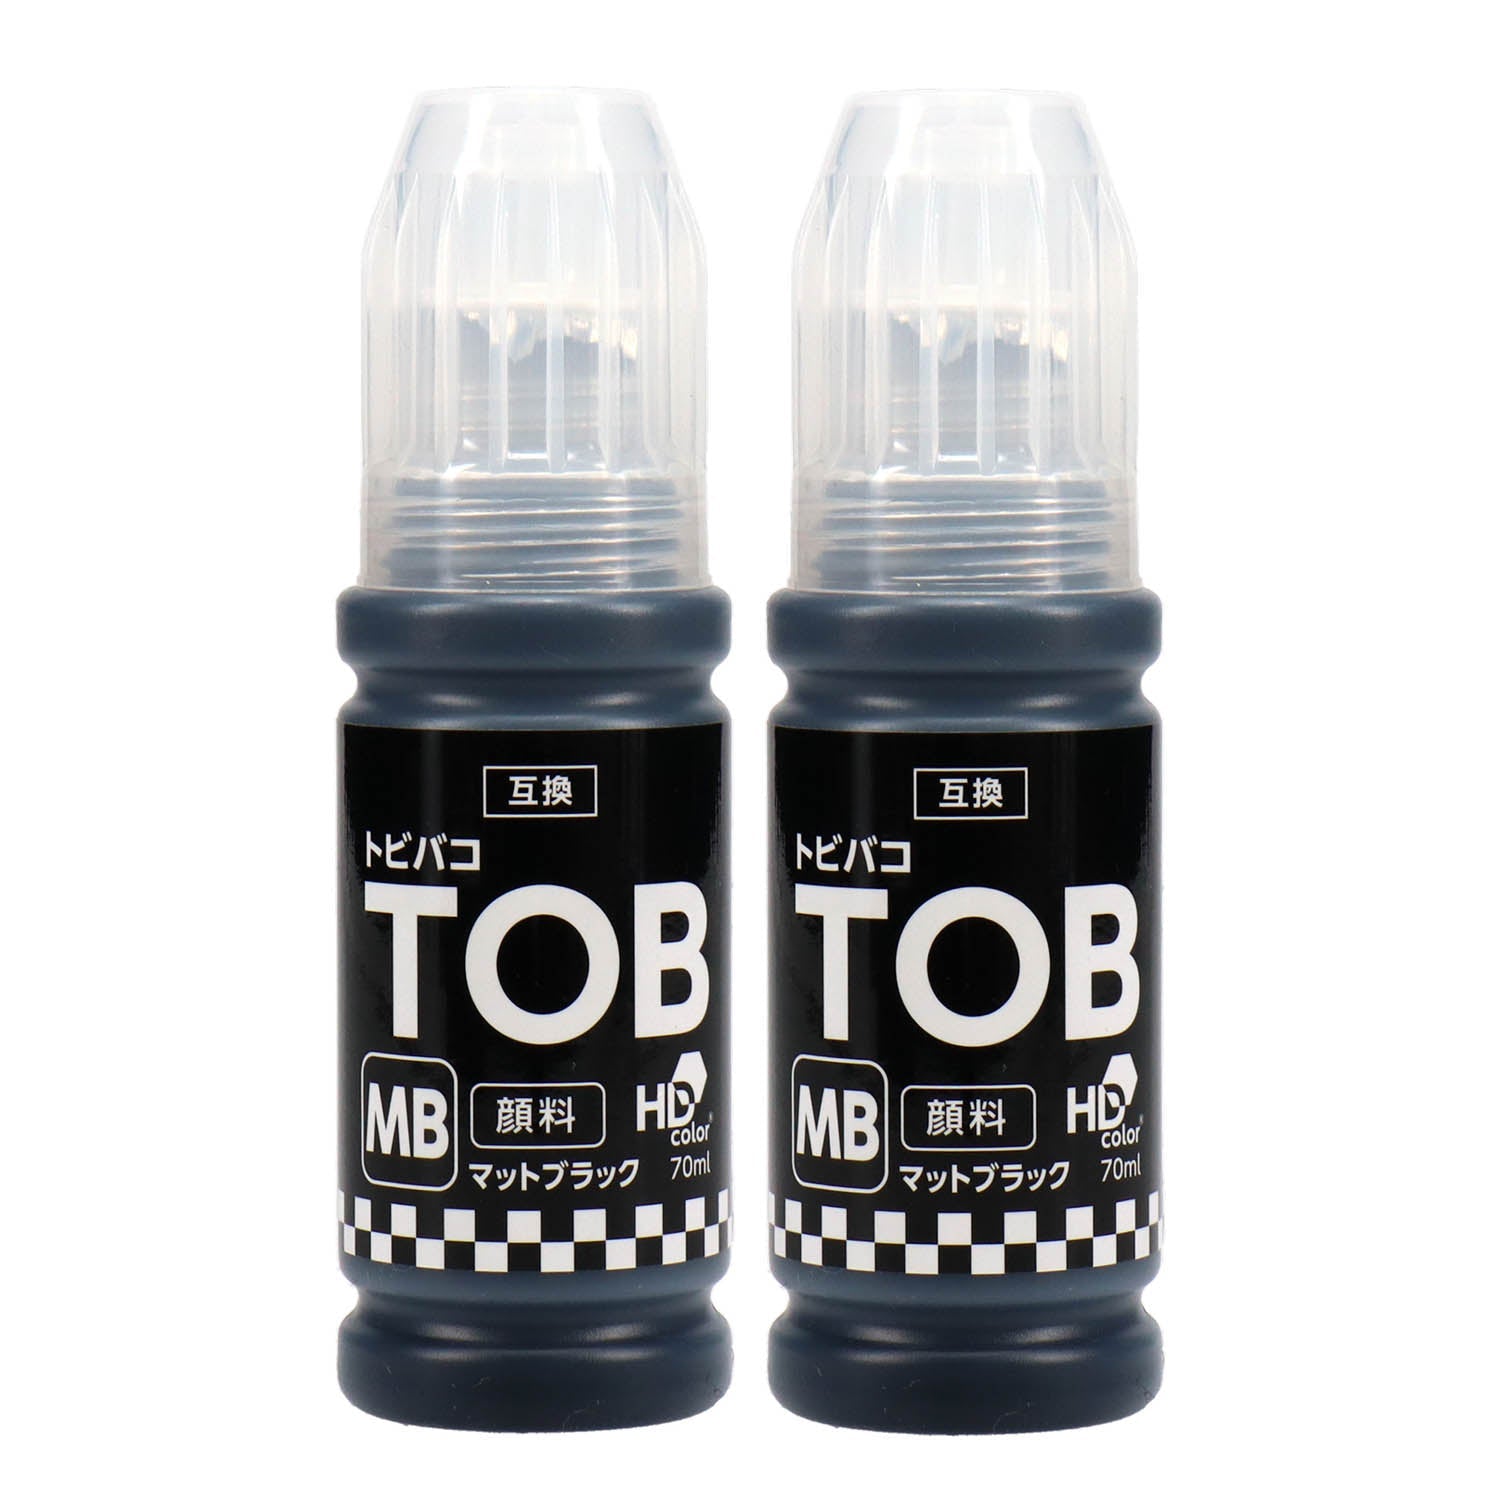 純正品エプソン インクボトル (トビバコ) TOB 5色セット (TOB-PB MB C M Y) - 2